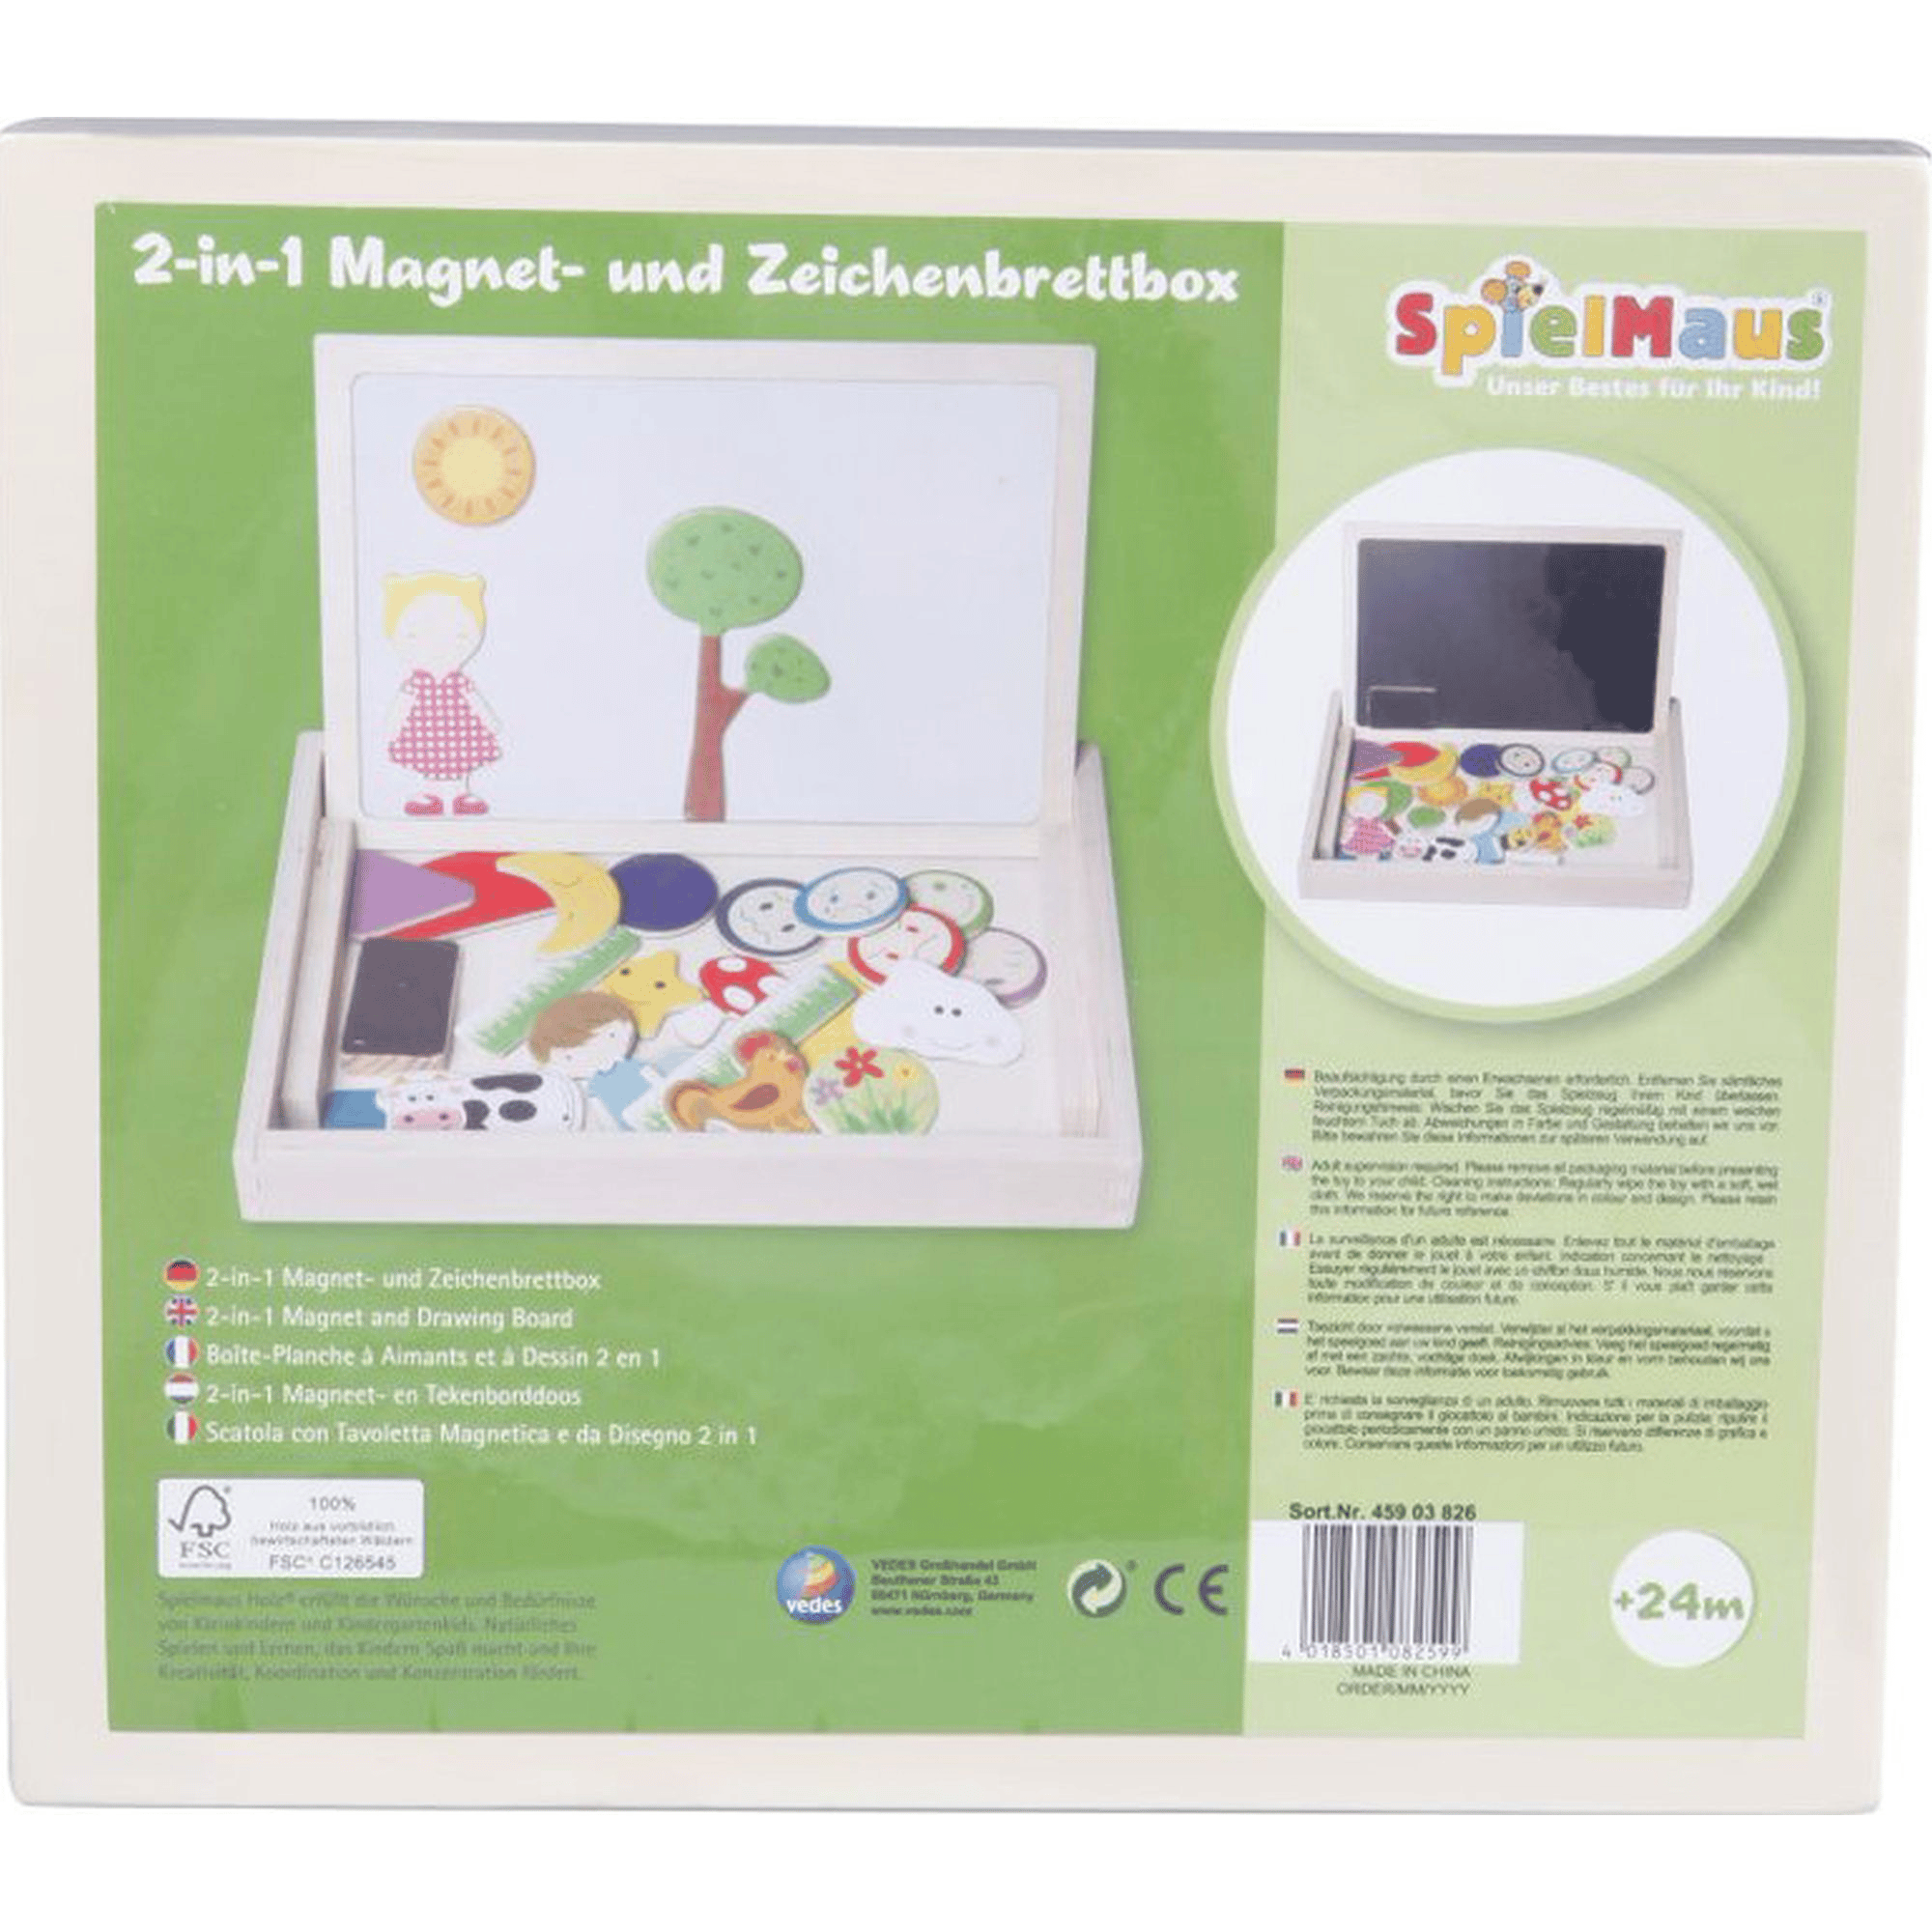 2in1 Magnet-und Zeichenbrettbox SpielMaus Mehrfarbig 2000585720605 2